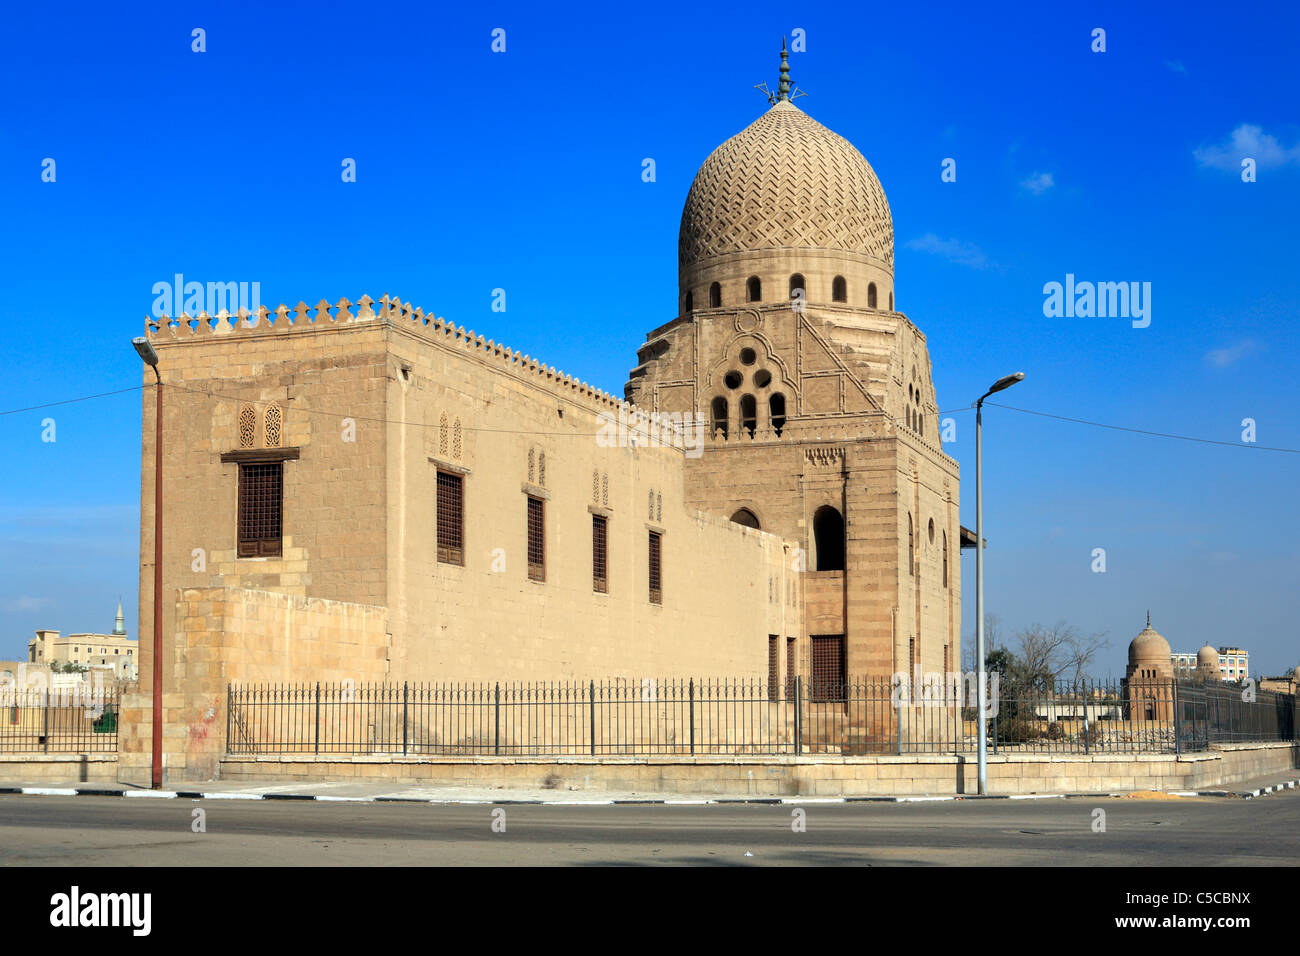 Amir Qurqumas mausoleum (1507), Cairo, Egypt Stock Photo